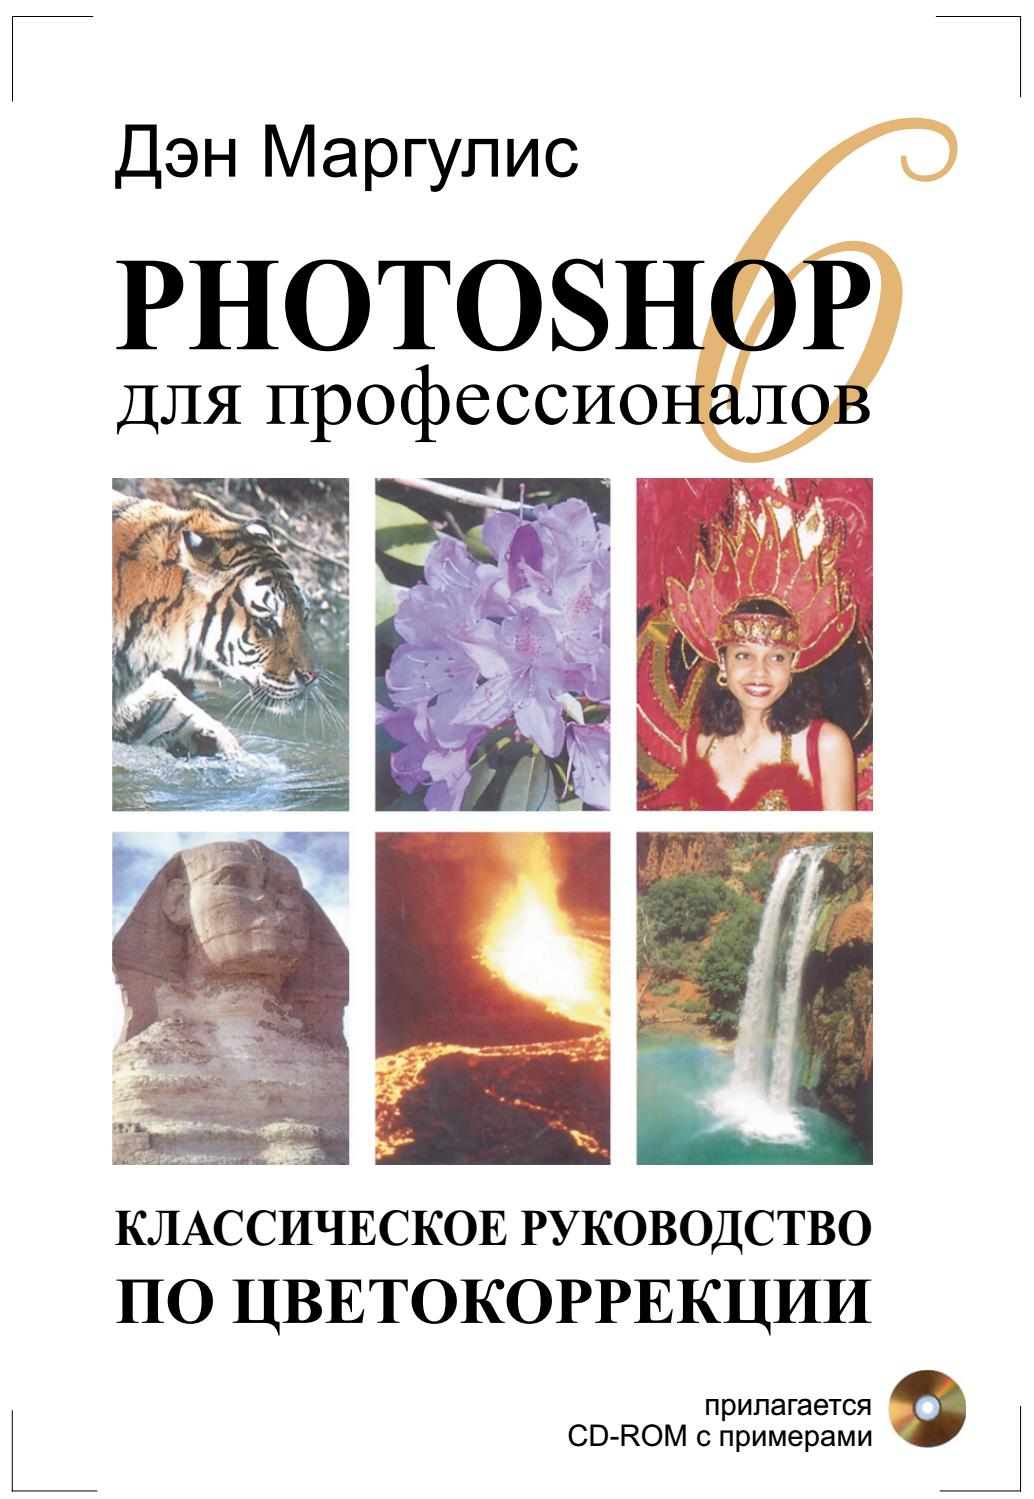 Photoshop для профессионалов. Классическое руководство по цветокоррекции, 2001, Дэн Маргулис